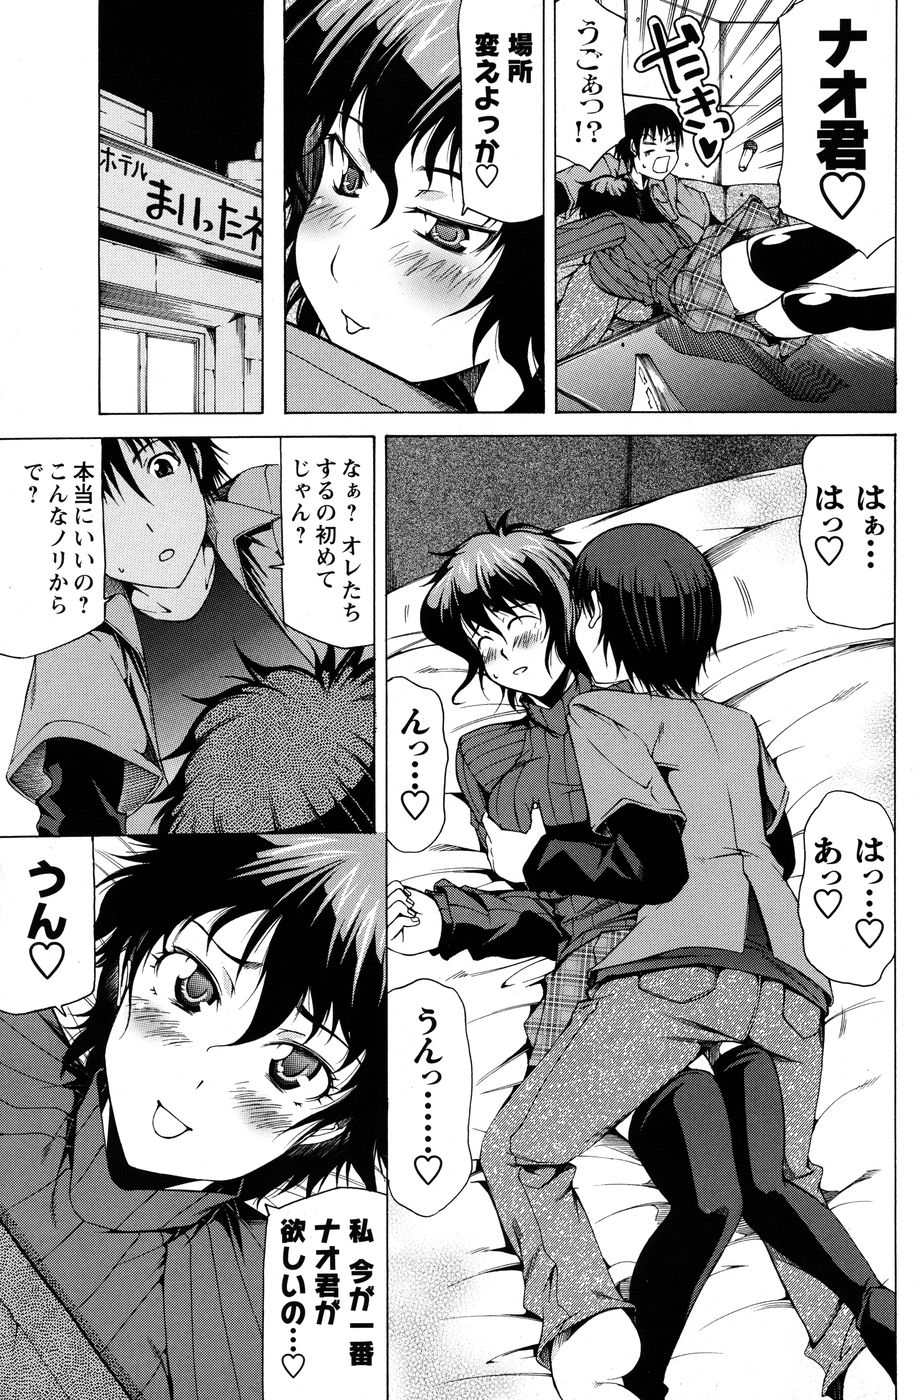 Comic Men&#039;s Young Special IKAZUCHI Vol.14 [雑誌] メンズヤングスペシャル 雷IKAZUCHI Vol.14